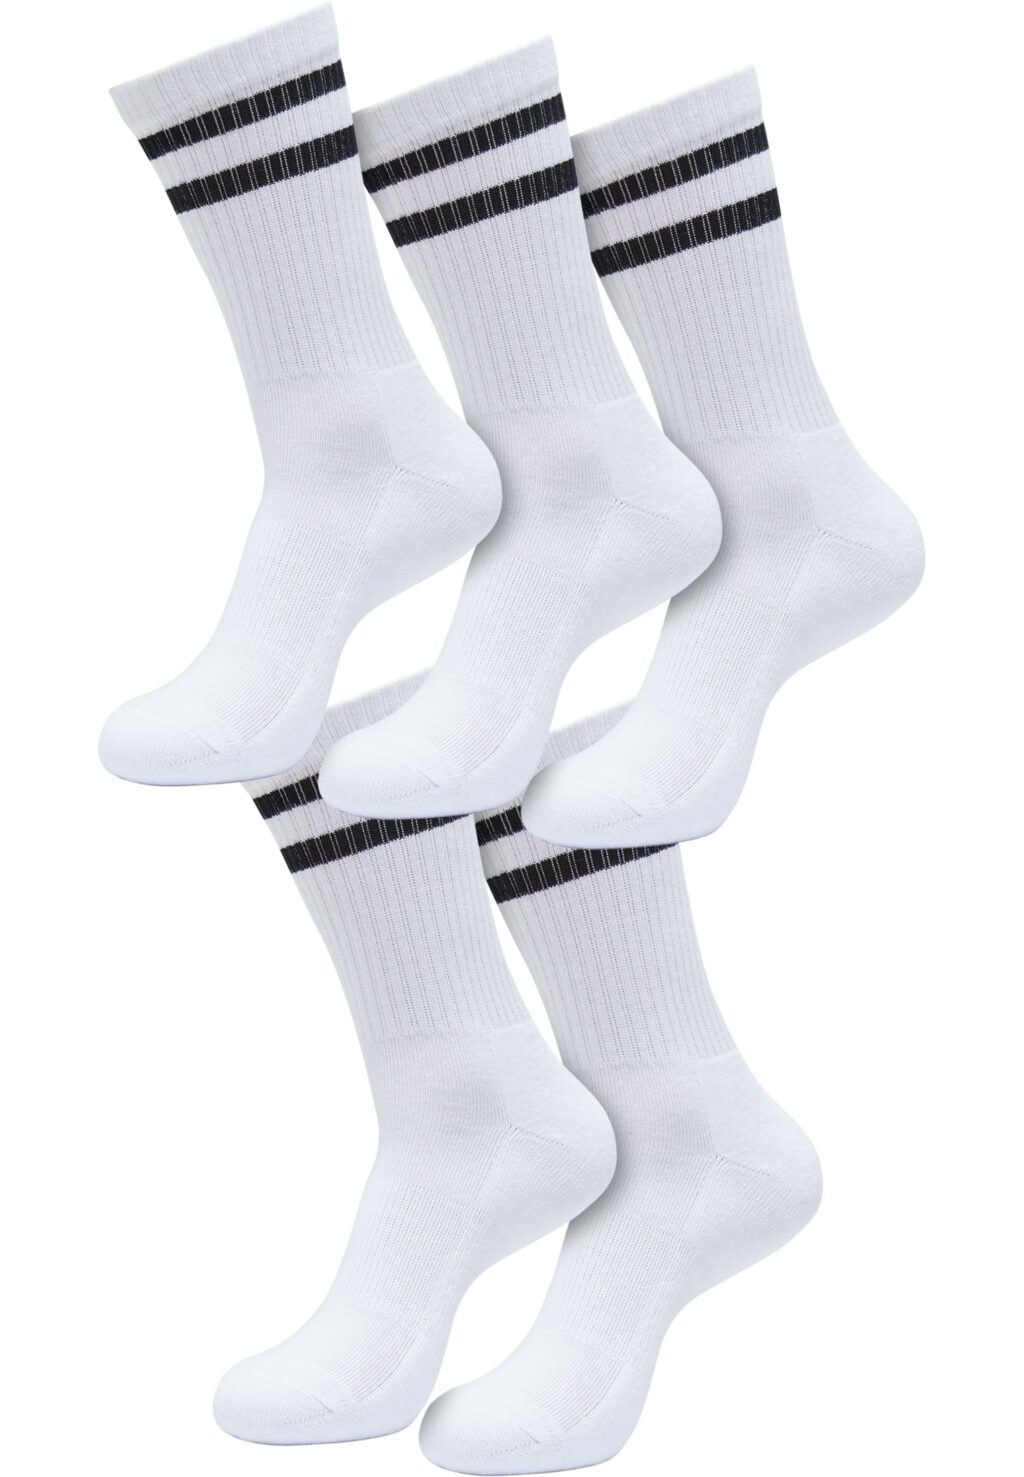 Double Stripe Socks 5-Pack white/black TB6801